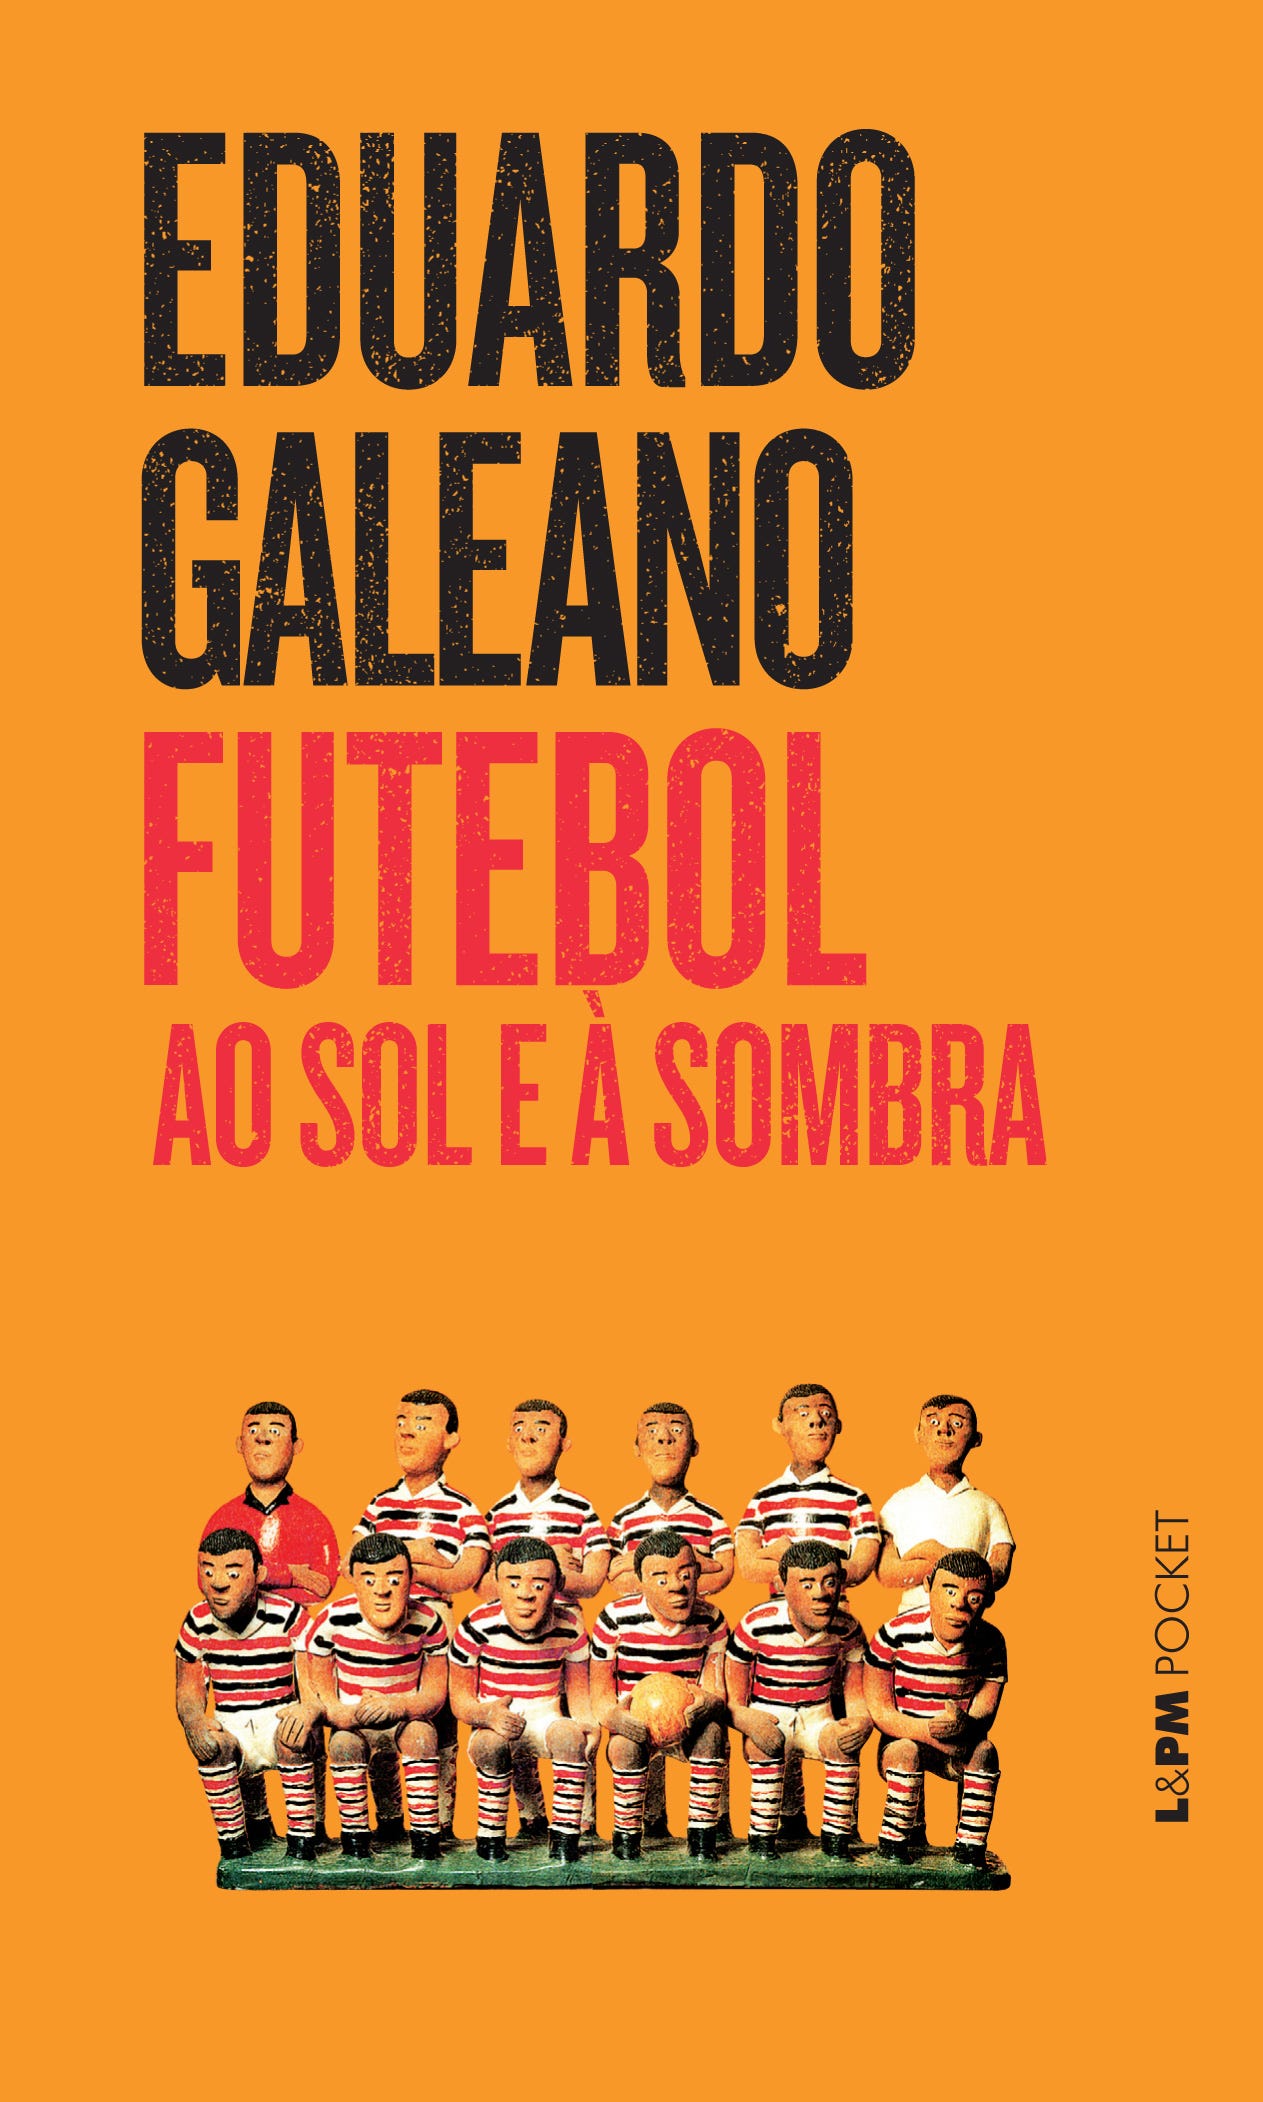 Do Futebol de 7 para o Futebol de 11 Bruno Rodrigues - Livro